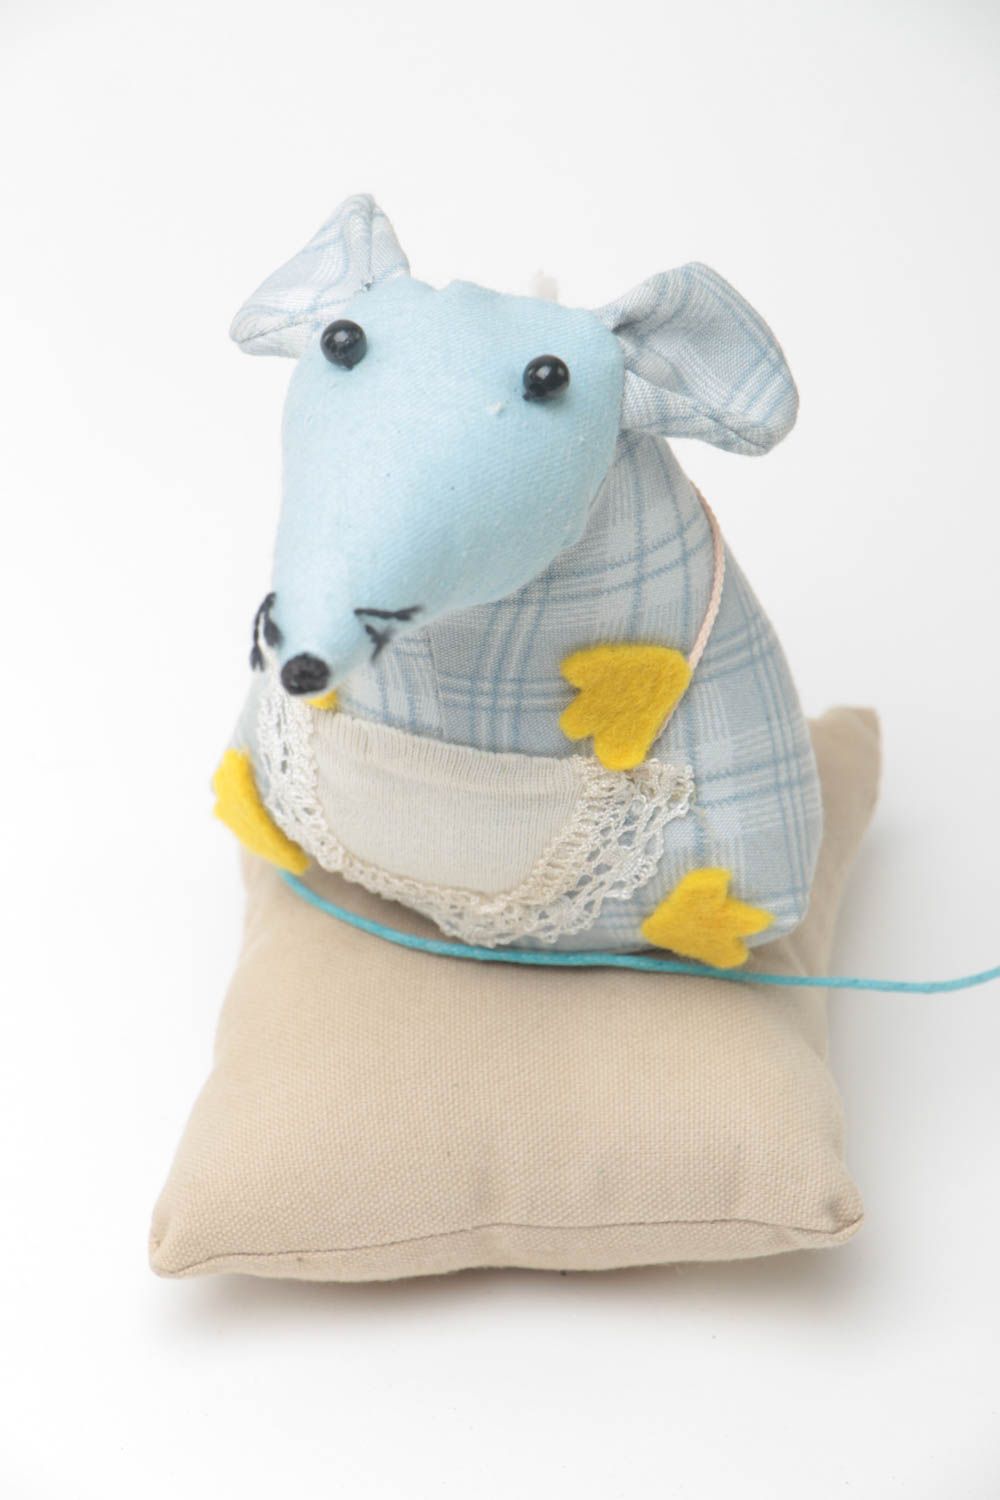 Мягкая игрушка крыска на подушке из ткани ручной работы милая в голубых тонах фото 2